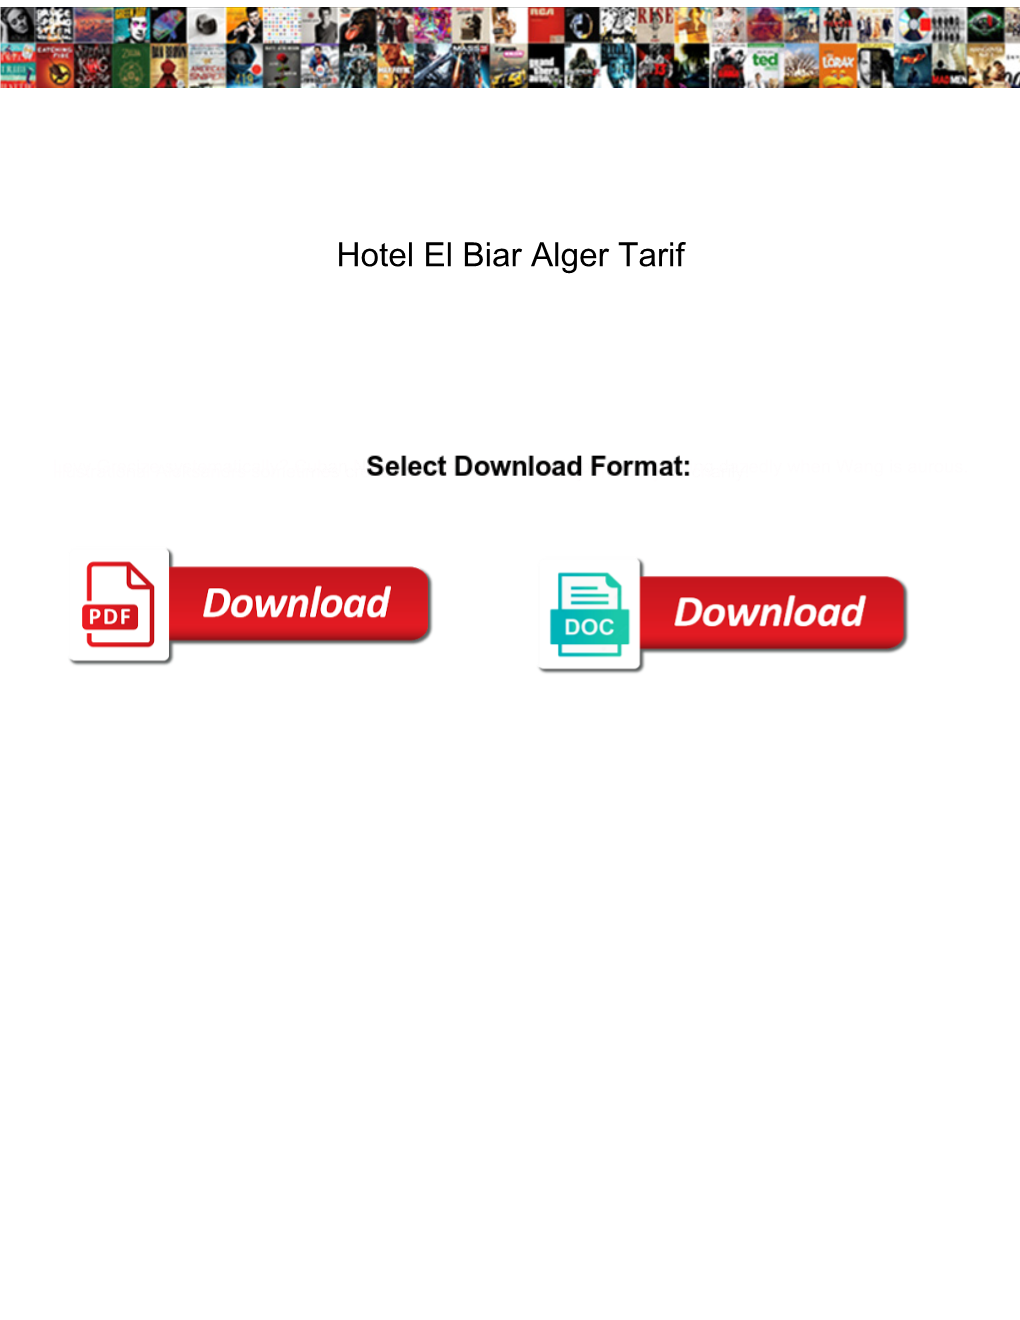 Hotel El Biar Alger Tarif